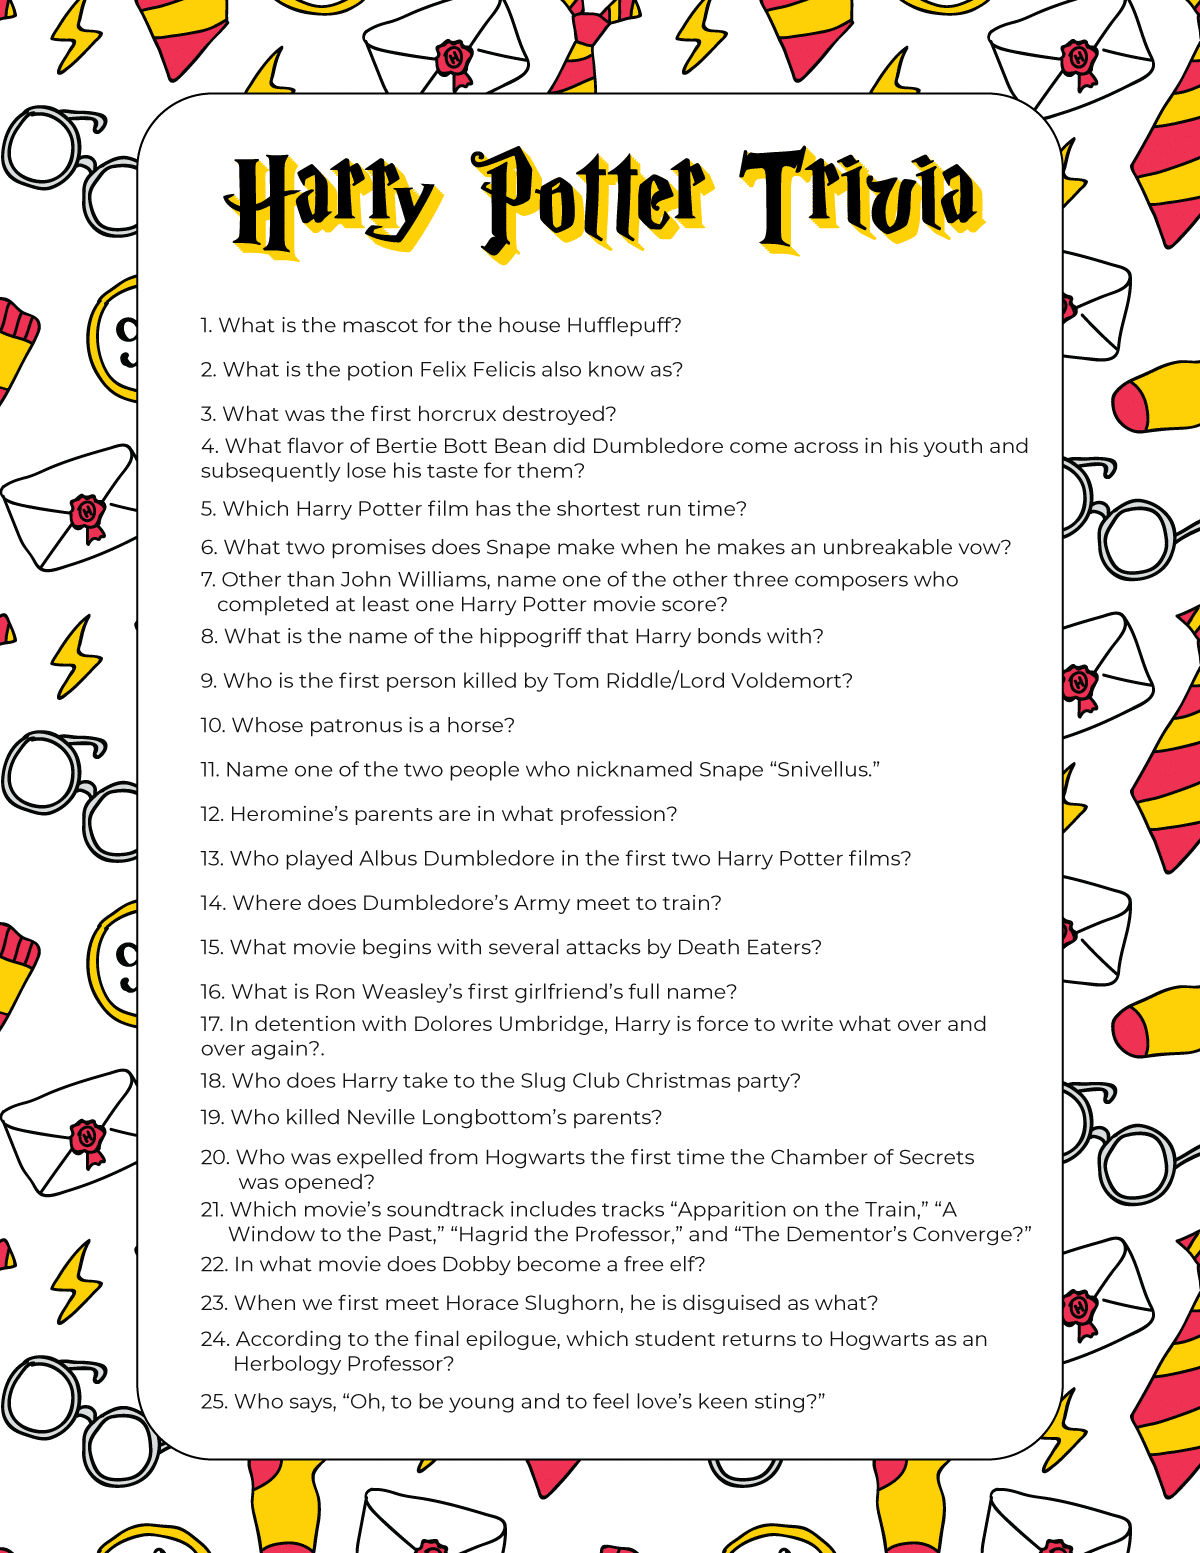 Preguntas de trivia de Harry Potter sobre un fondo blanco.